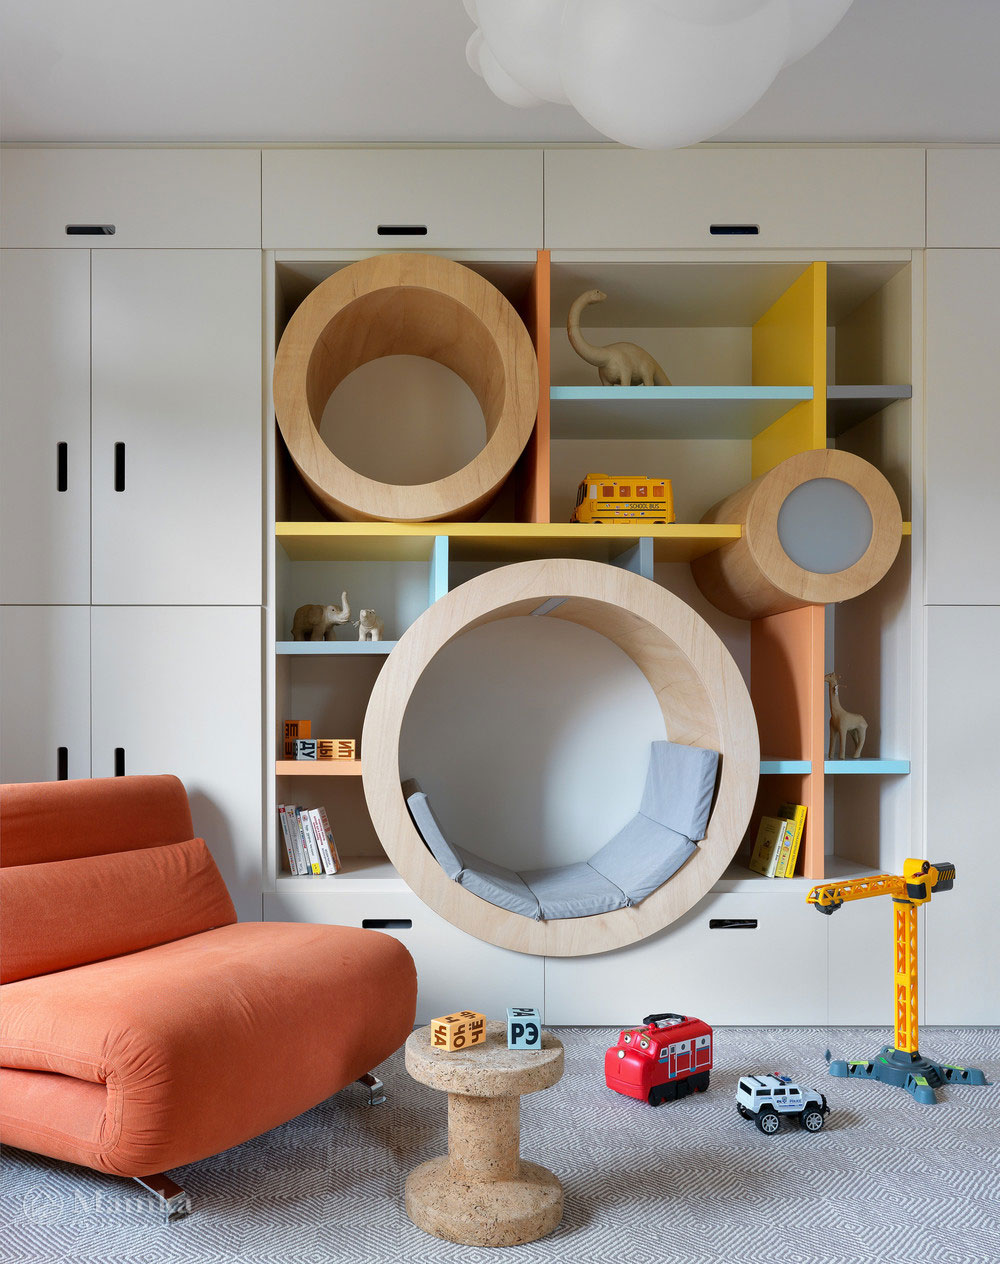 Топ-10 самых необычных и практичных предметов мебели для детской комнаты